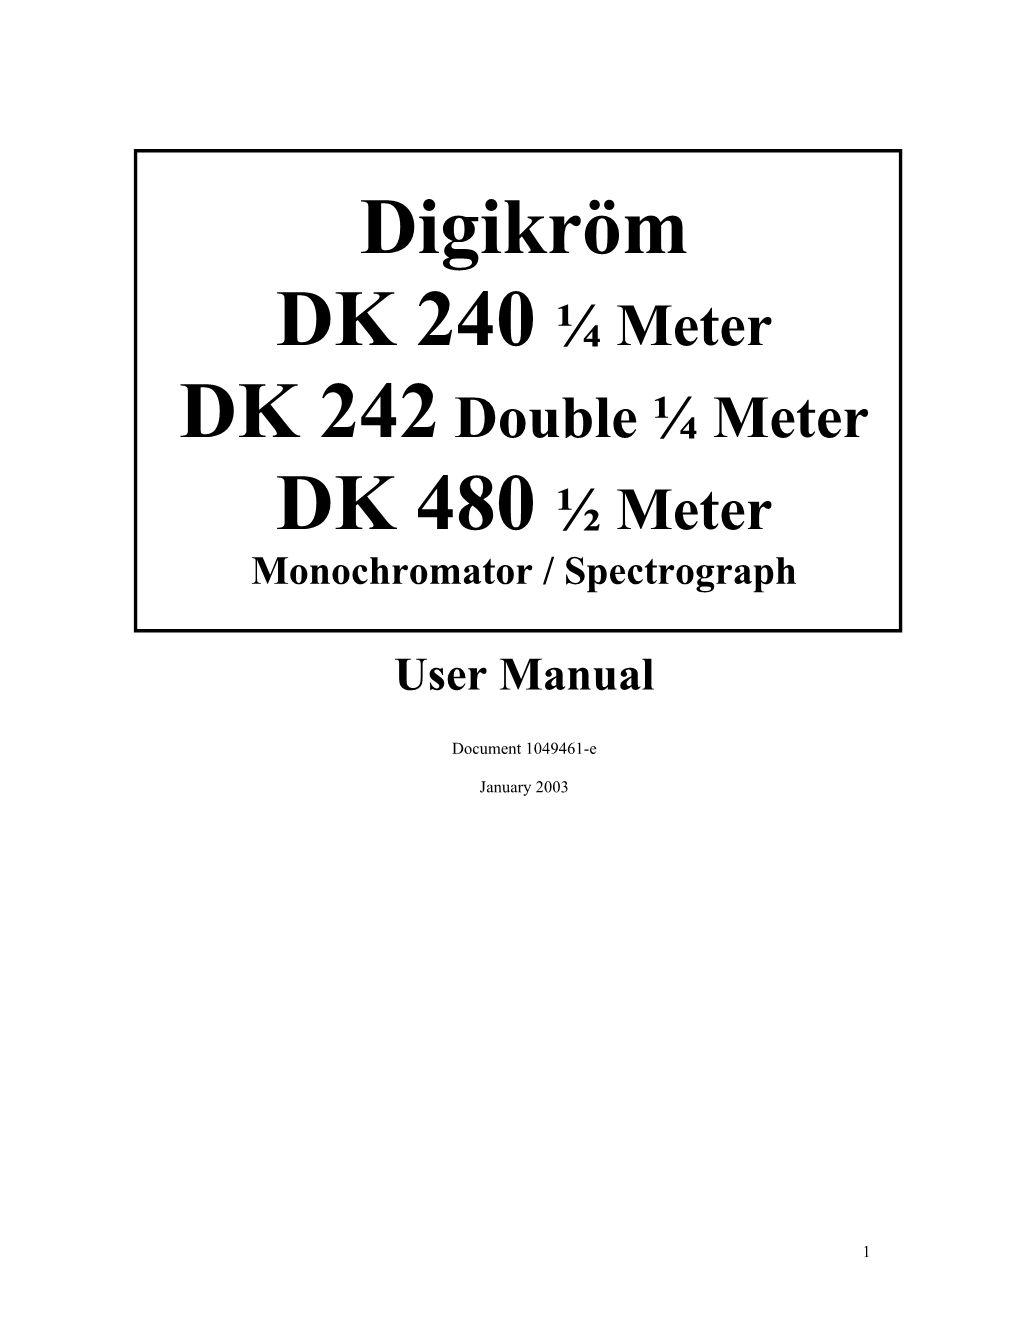 DK 242 Double Meter